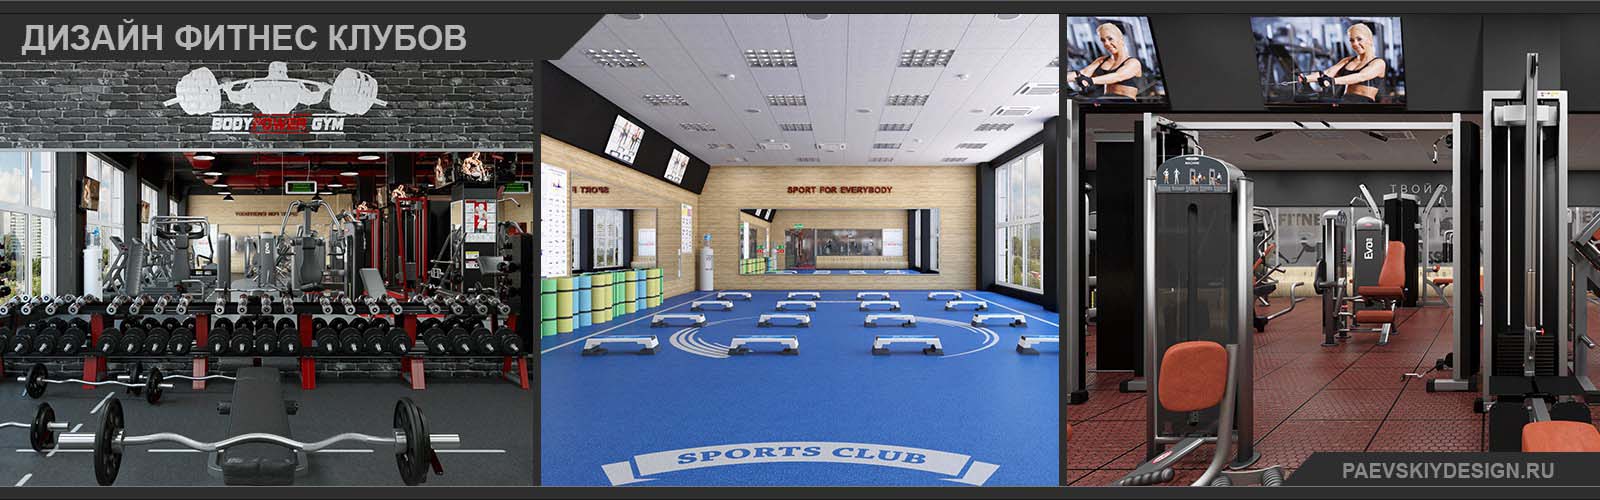 Дизайн фитнес клуба под ключ Разработка проектов фитнес клубов и фитнес центров в Москве